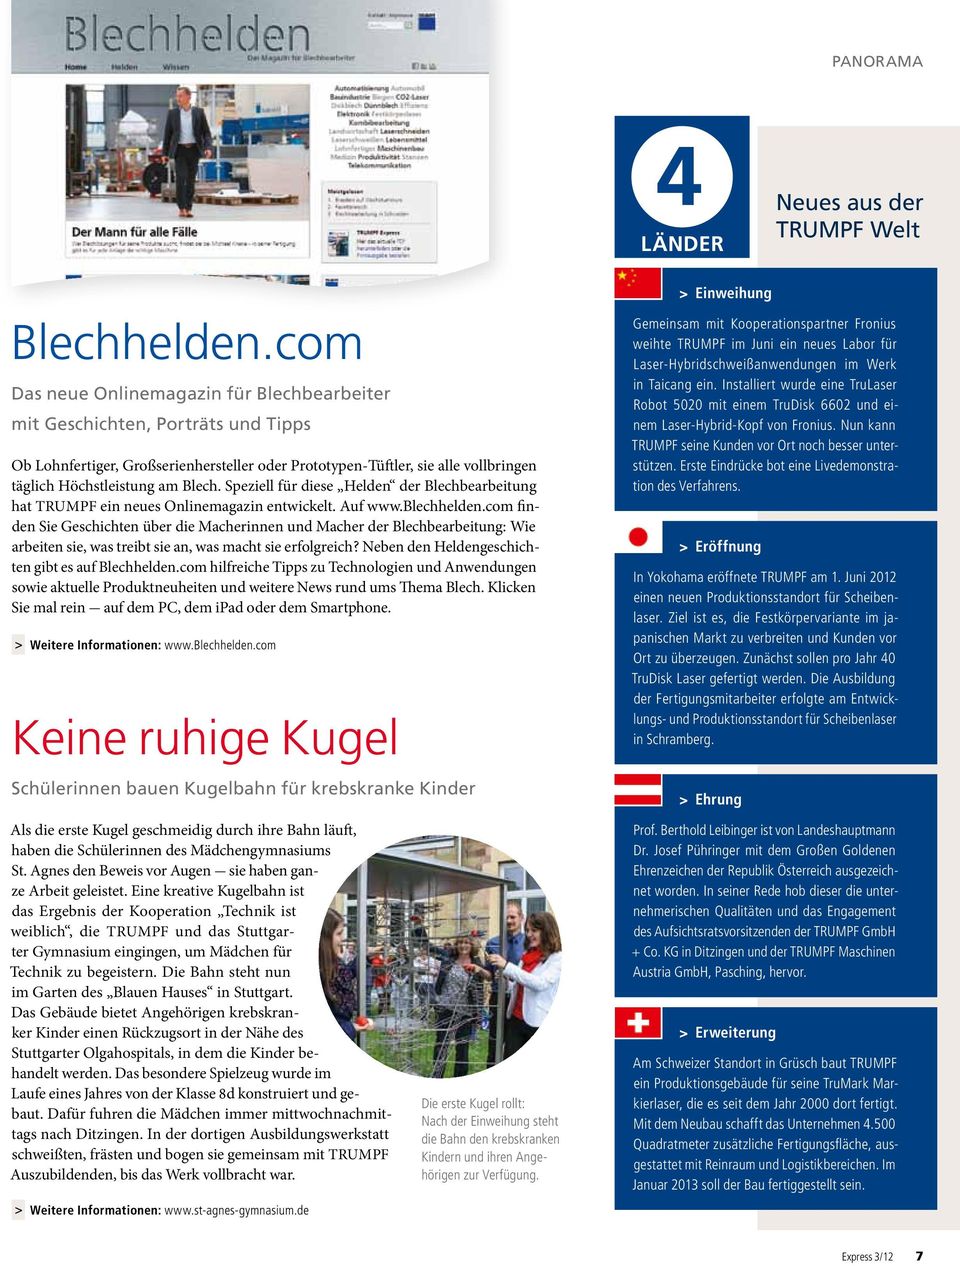 Speziell für diese Helden der Blechbearbeitung hat TRUMPF ein neues Onlinemagazin entwickelt. Auf www.blechhelden.